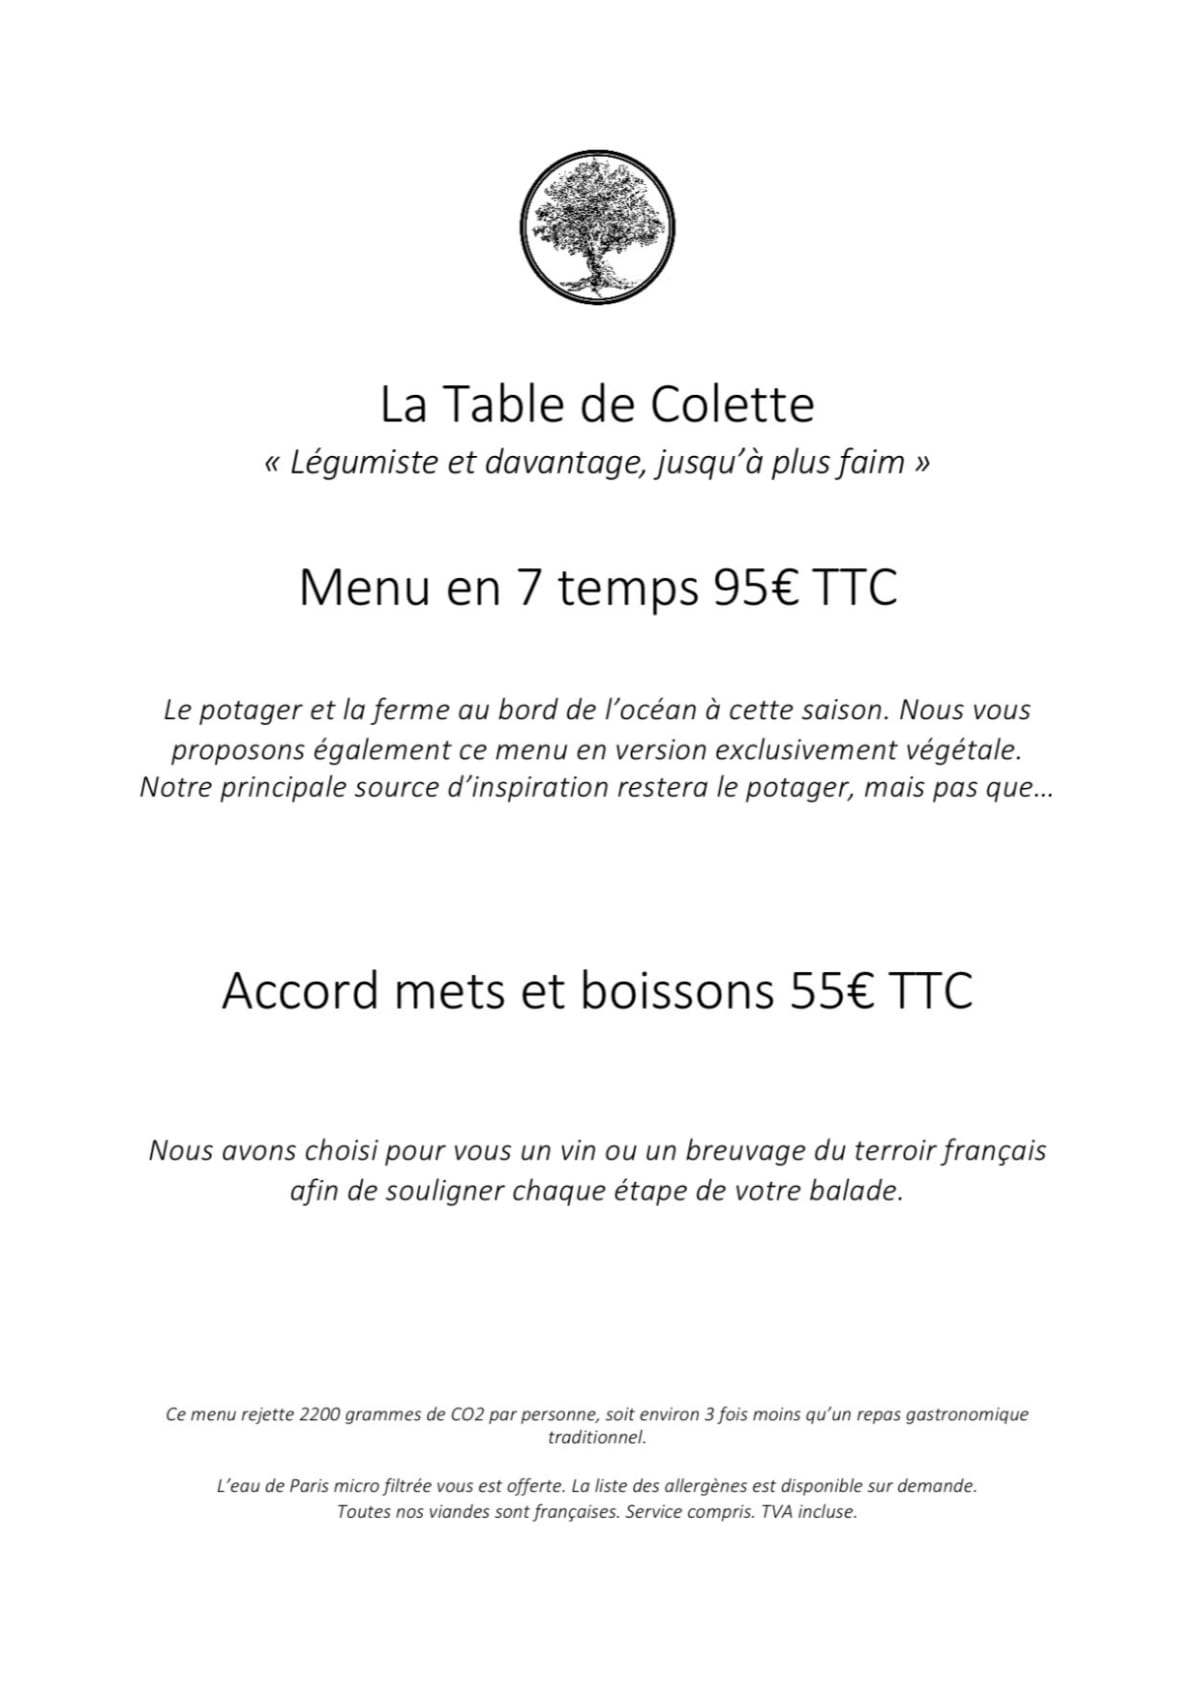 La Table de Colette menu